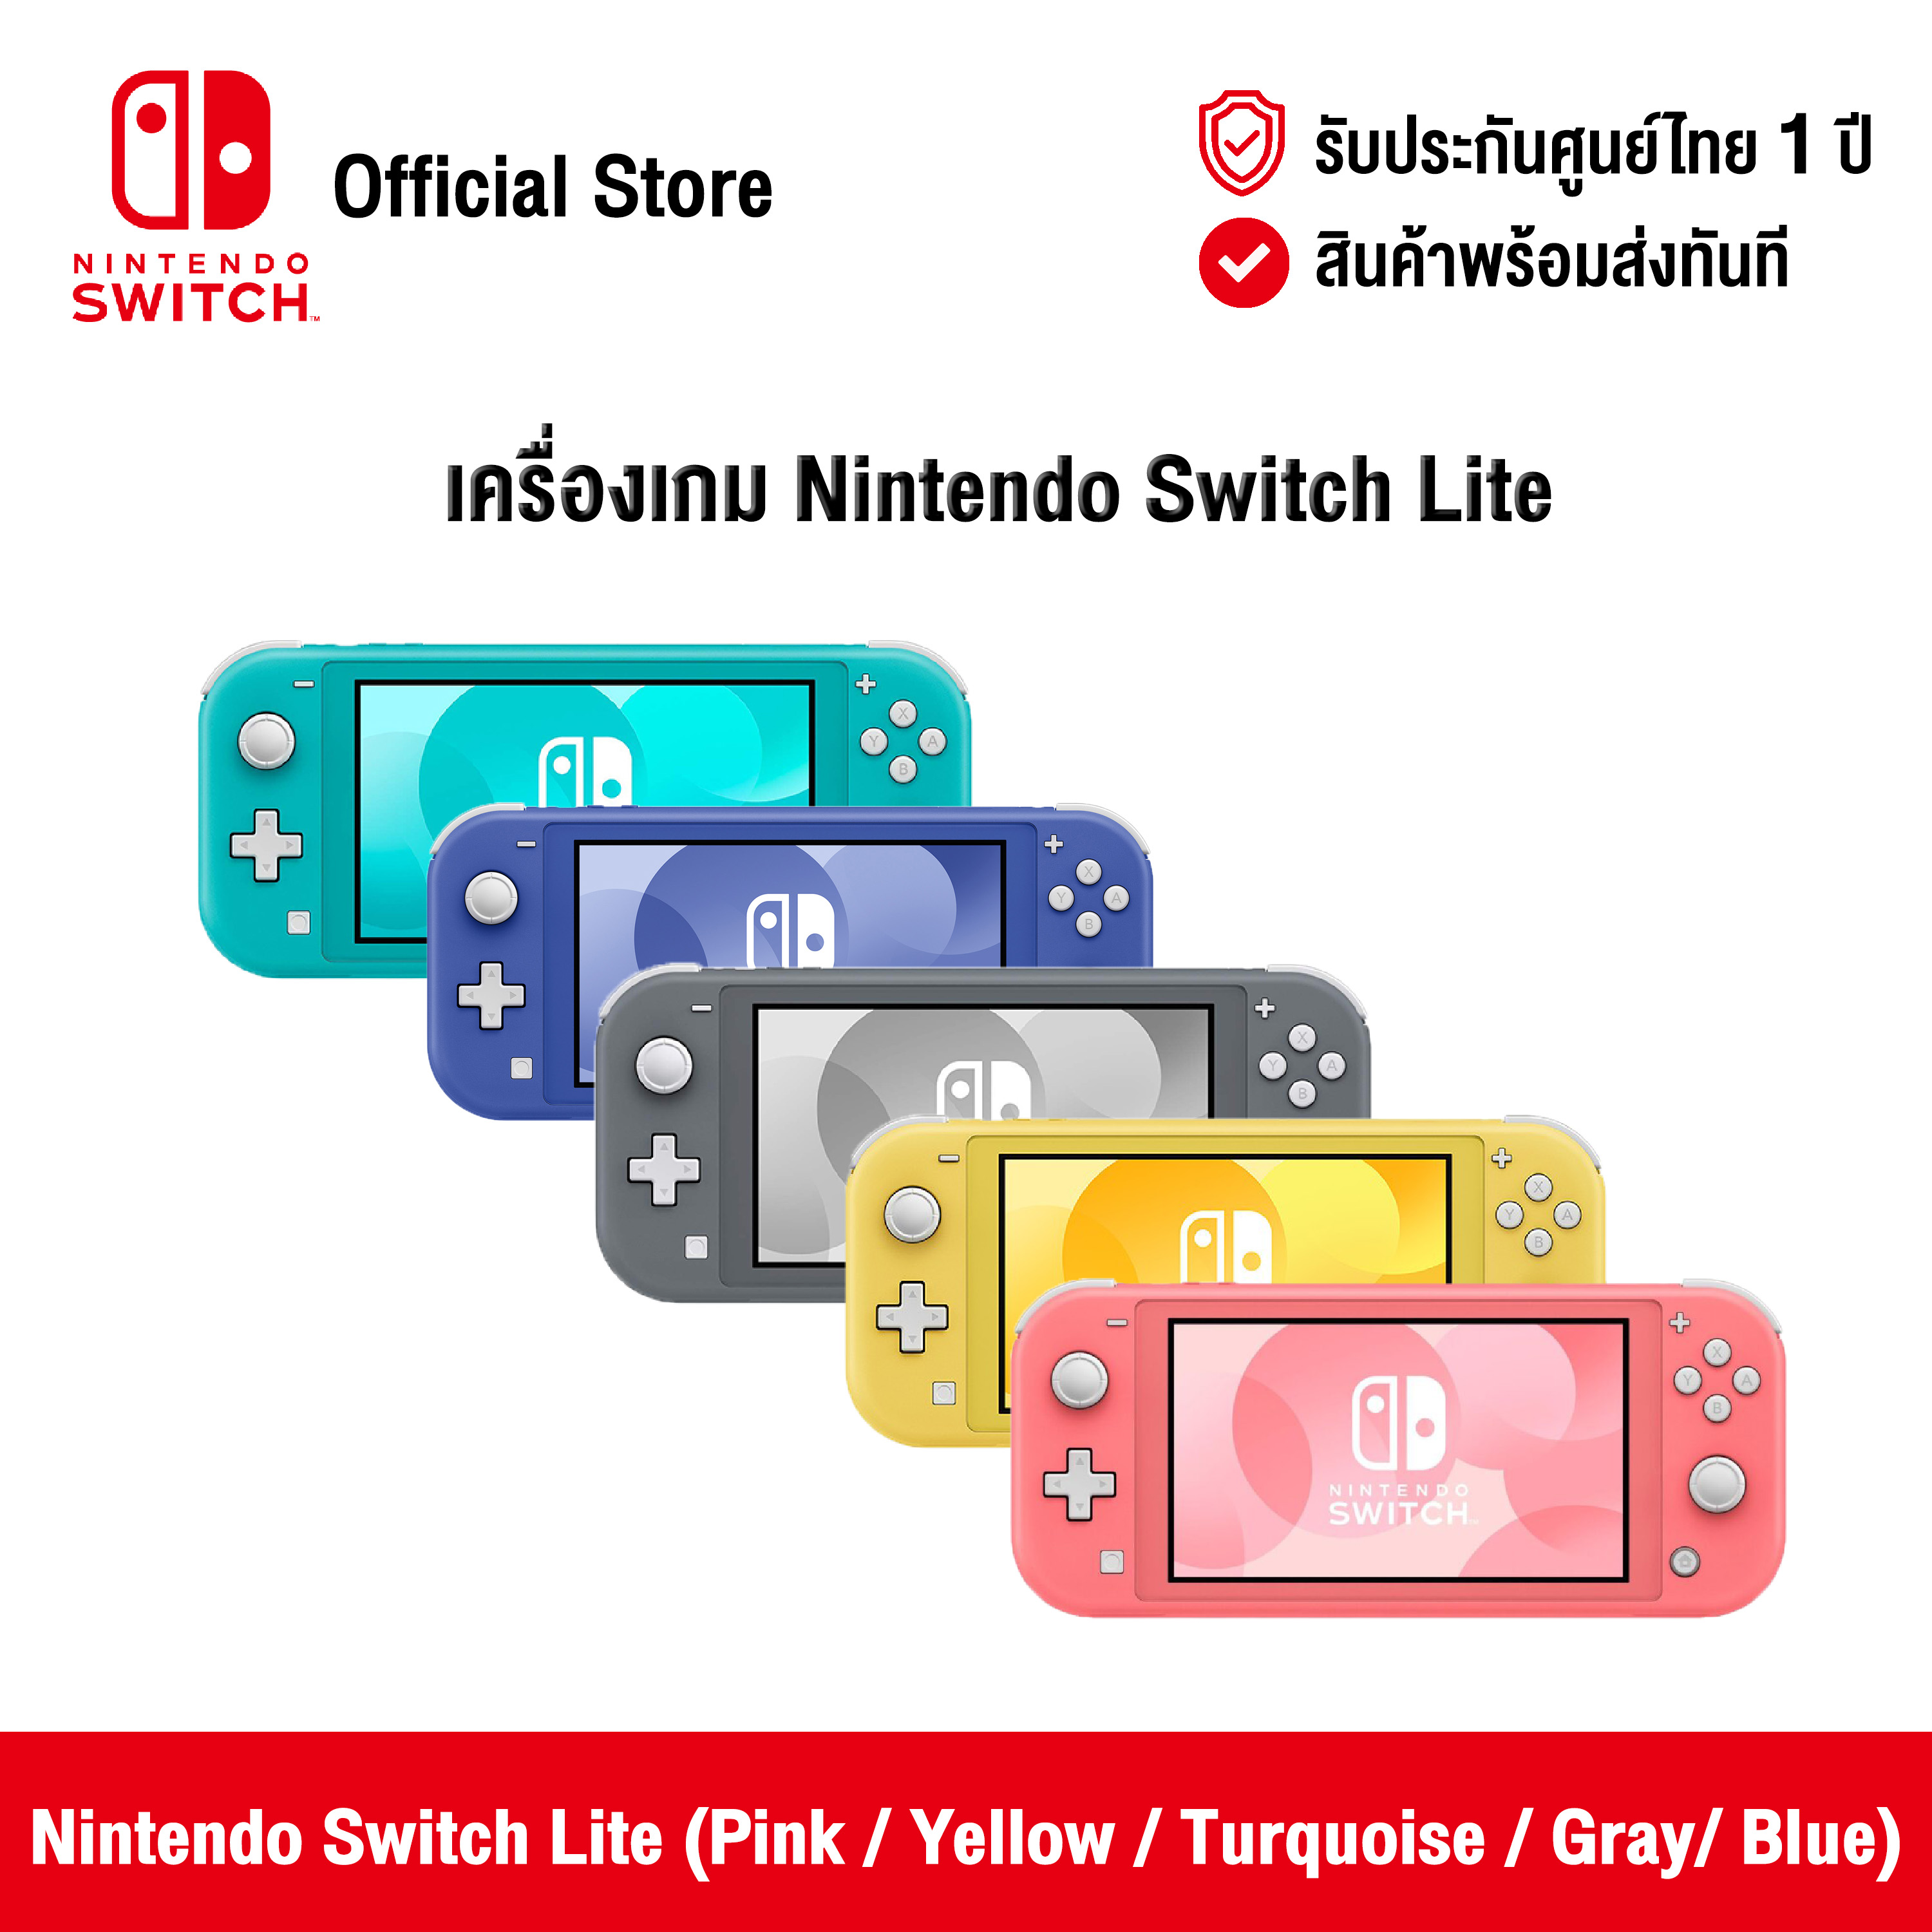 [ศูนย์ไทย] Nintendo Switch : Nintendo Switch Lite (Pink / Yellow / Turquoise / Gray / Blue) นินเทนโด้ สวิตช์ ขนาดพกพา (สีชมพู / สีเหลือง /สีเทอควอยซ์ /สีเทา)